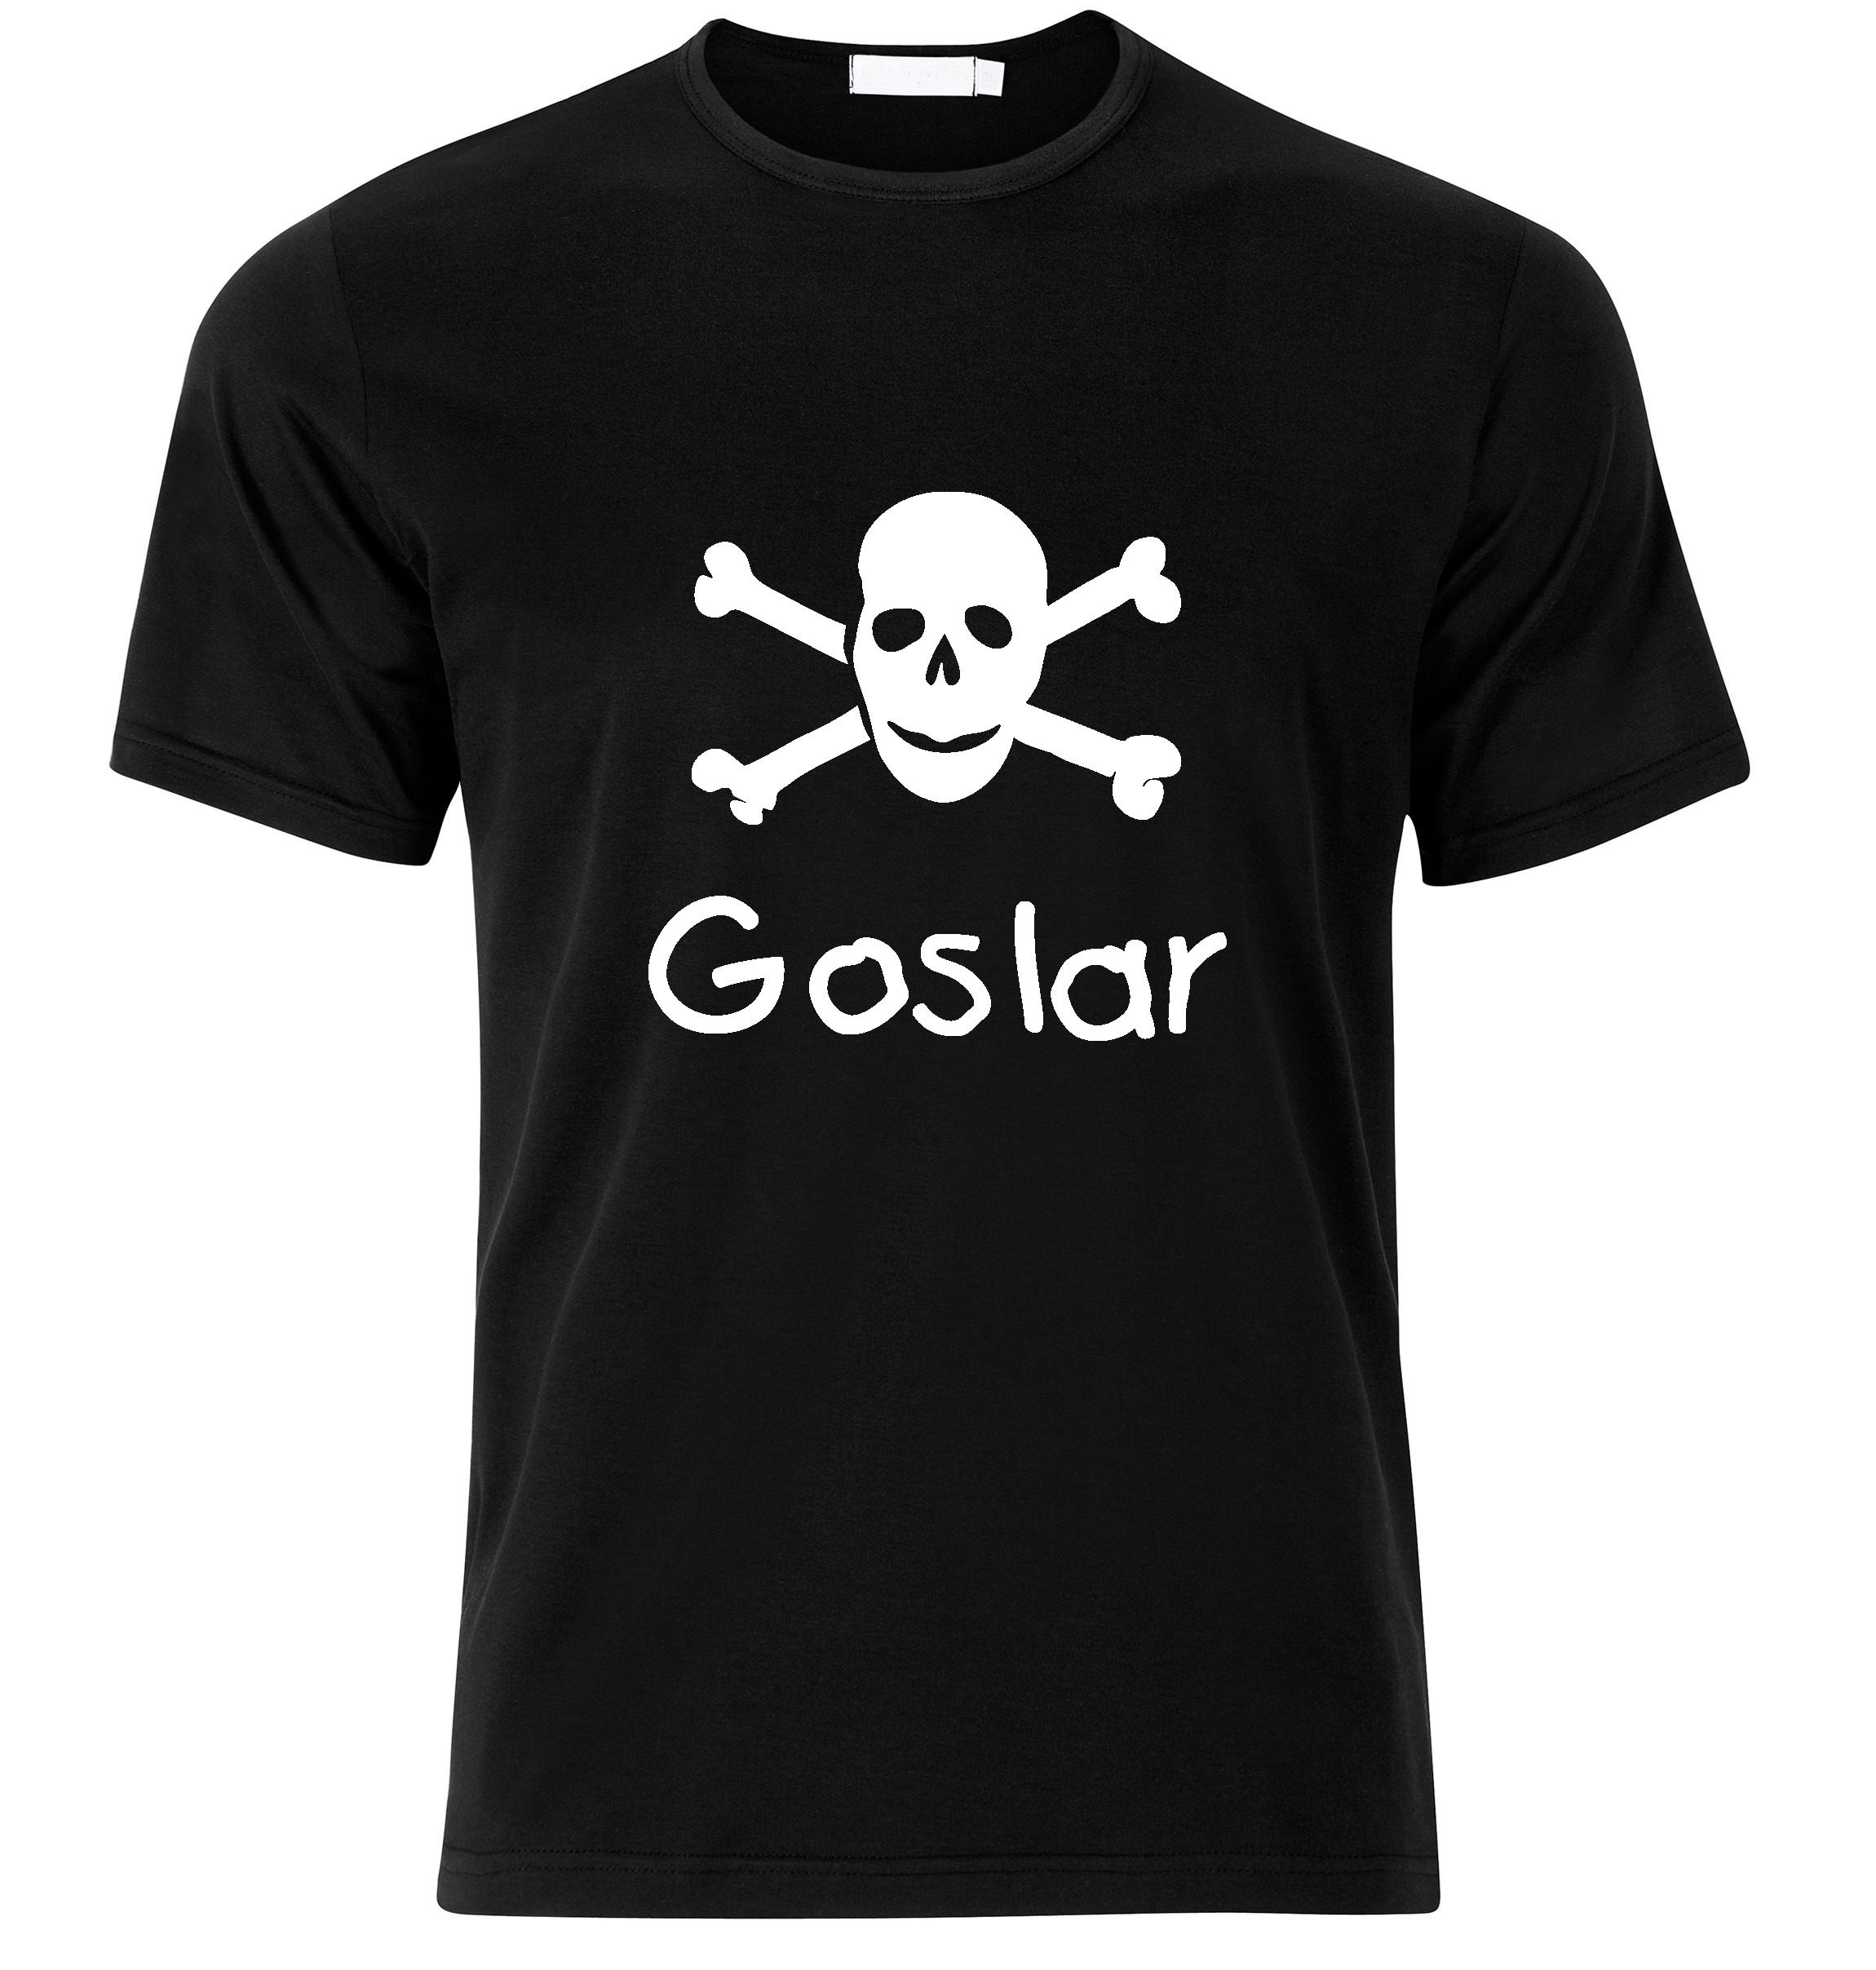 T-Shirt Goslar Jolly Roger, Totenkopf